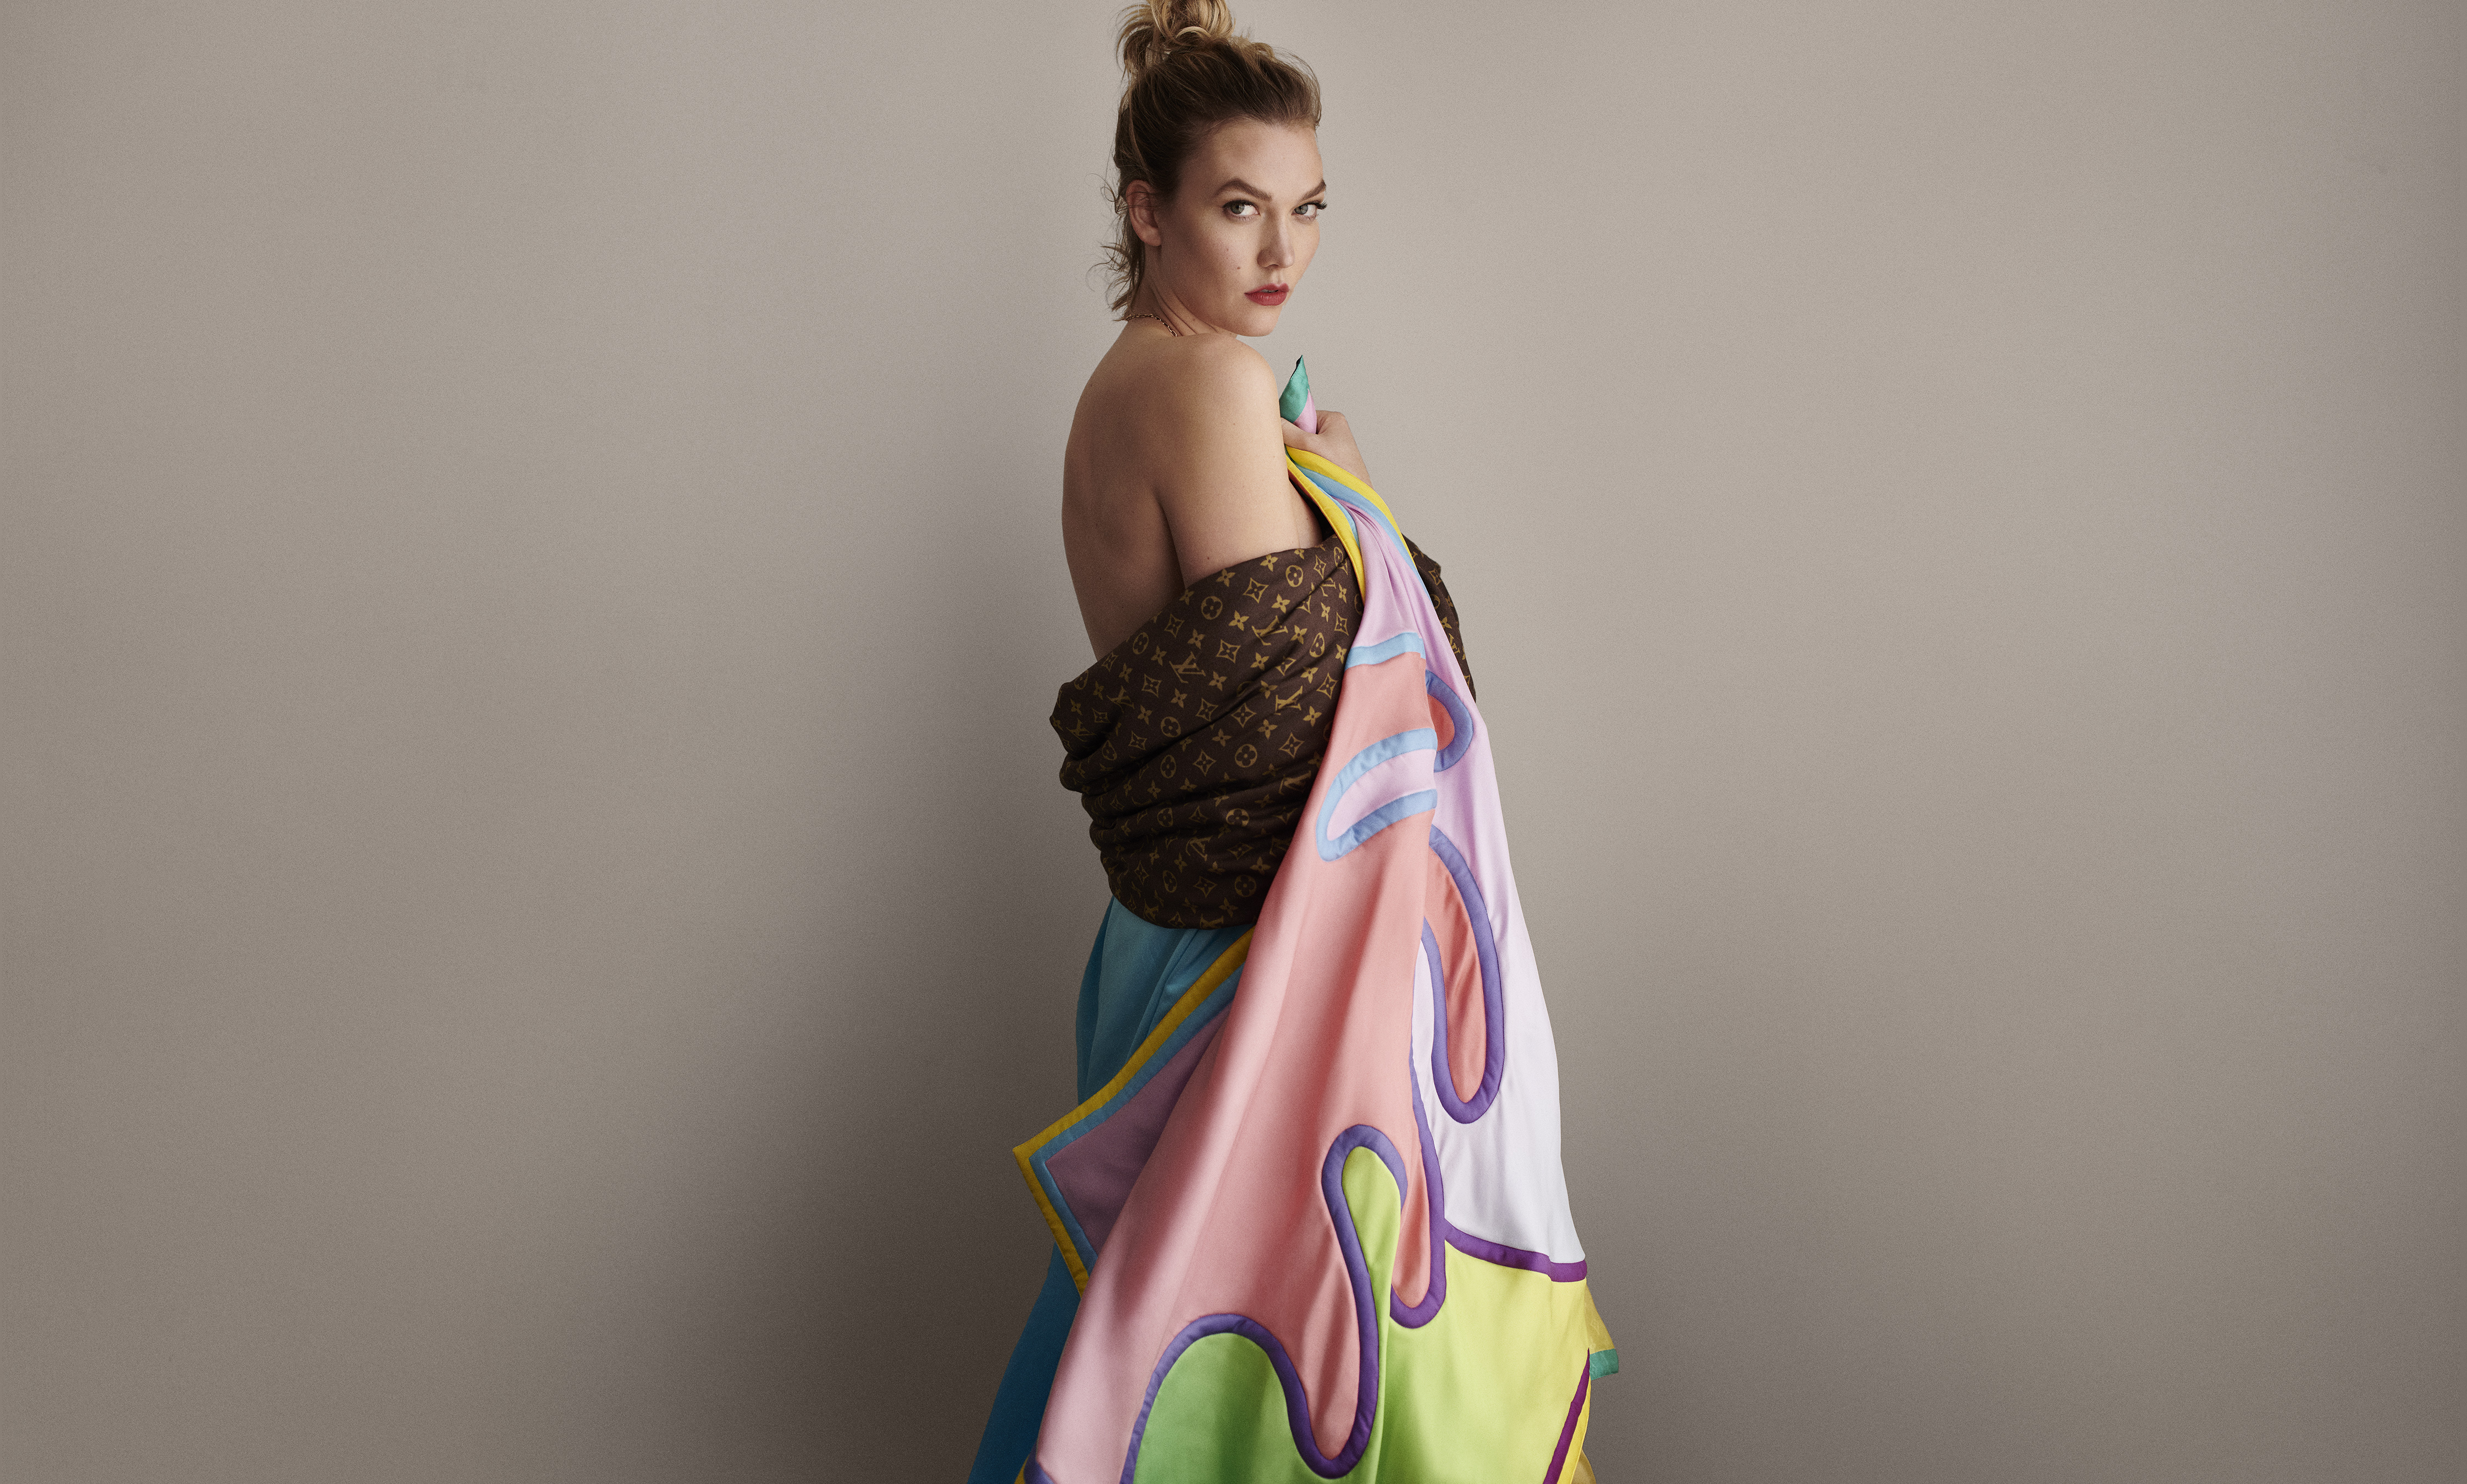 PHOTOS - Comment porter le foulard, accessoire tendance de l'été 2019 déjà  adopté par Karlie Kloss ? - Gala